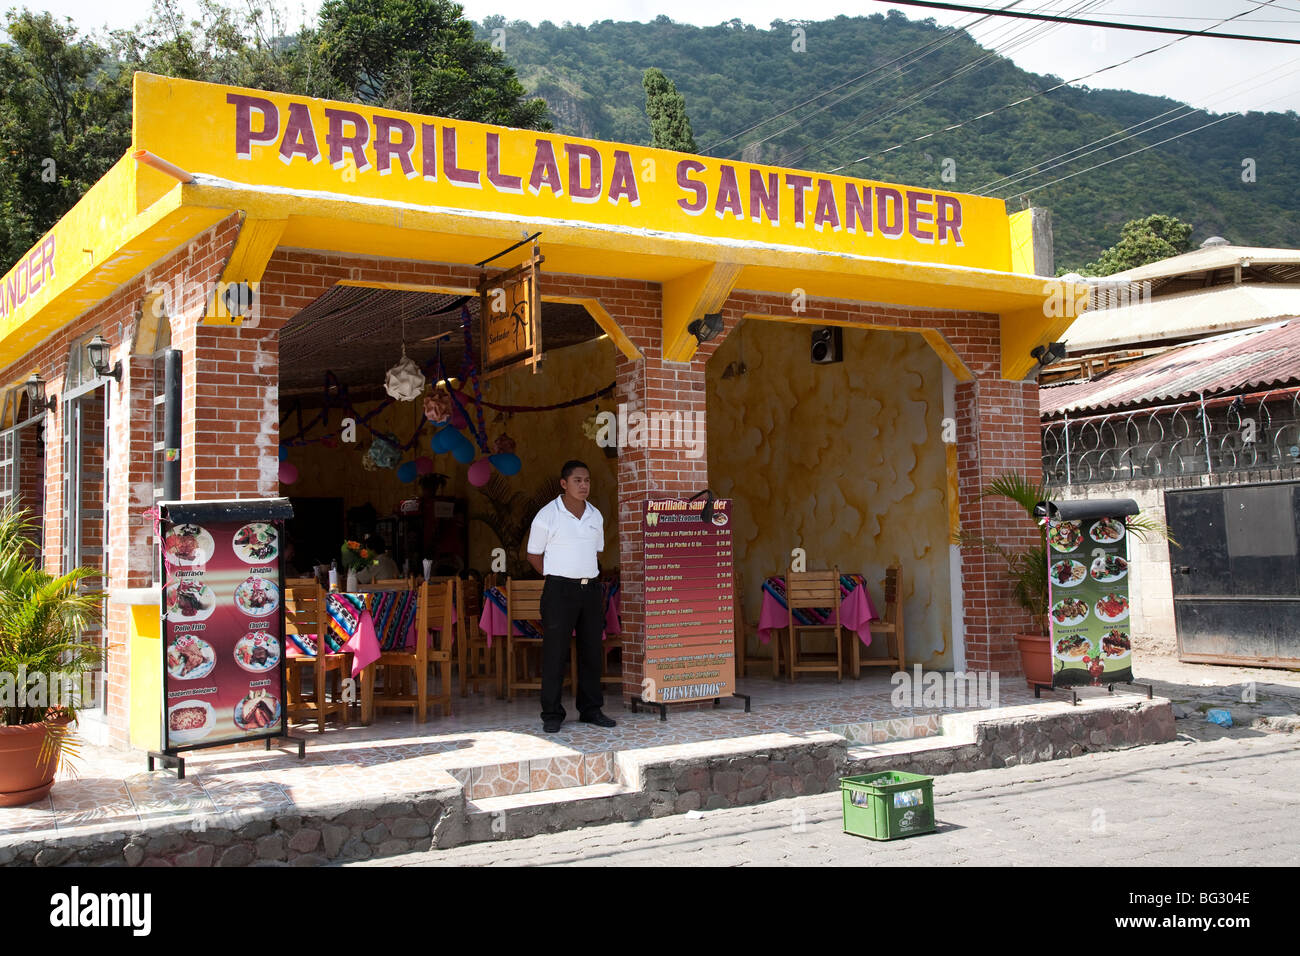 Parrillada Santander on Calle Santander Panajachel Lake Atitlan Guatemala. Stock Photo